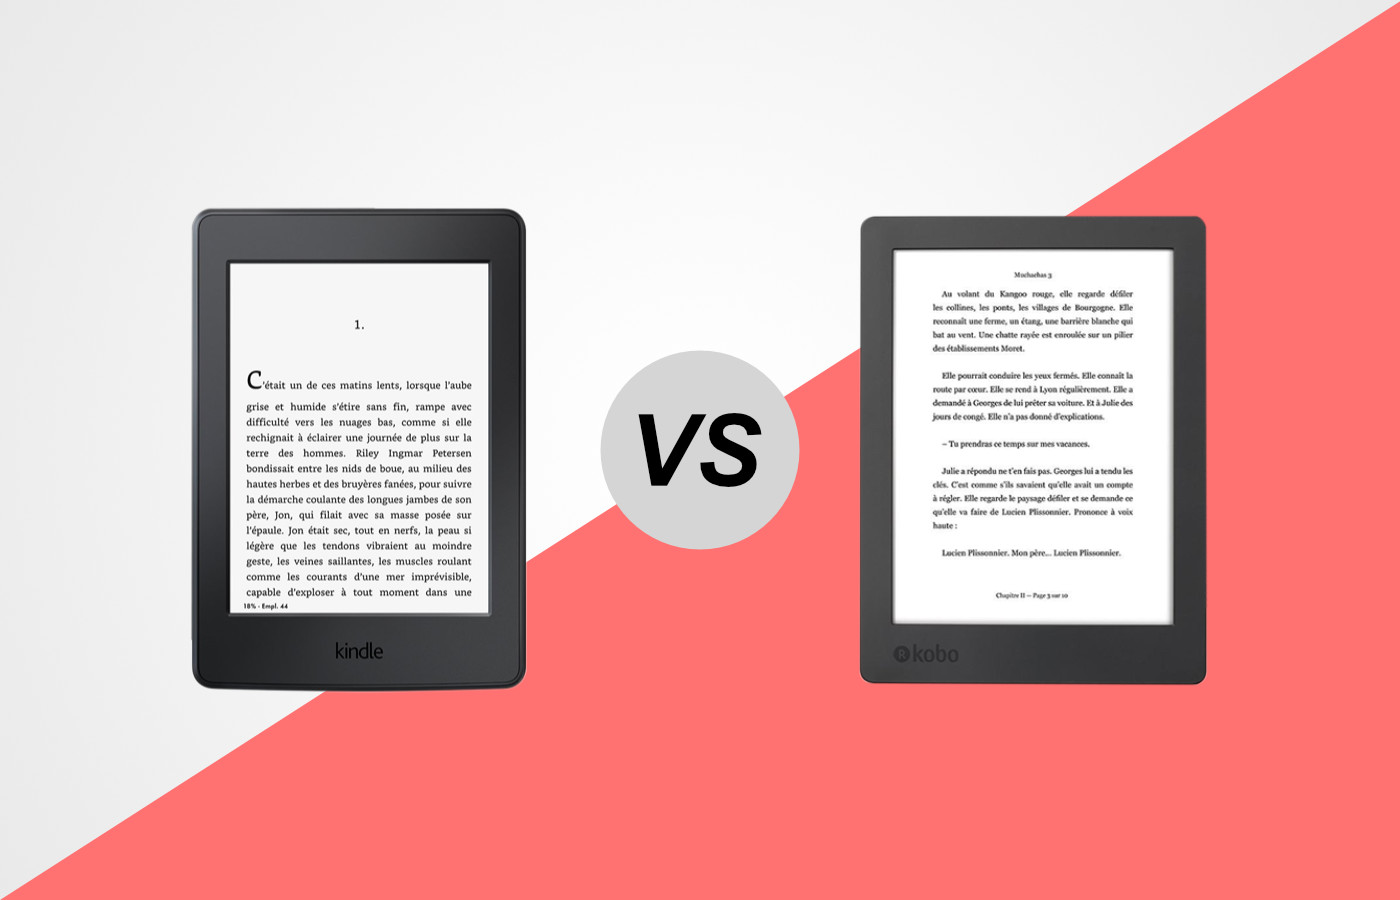 Kobo ou Kindle : quelle marque de liseuse choisir ?